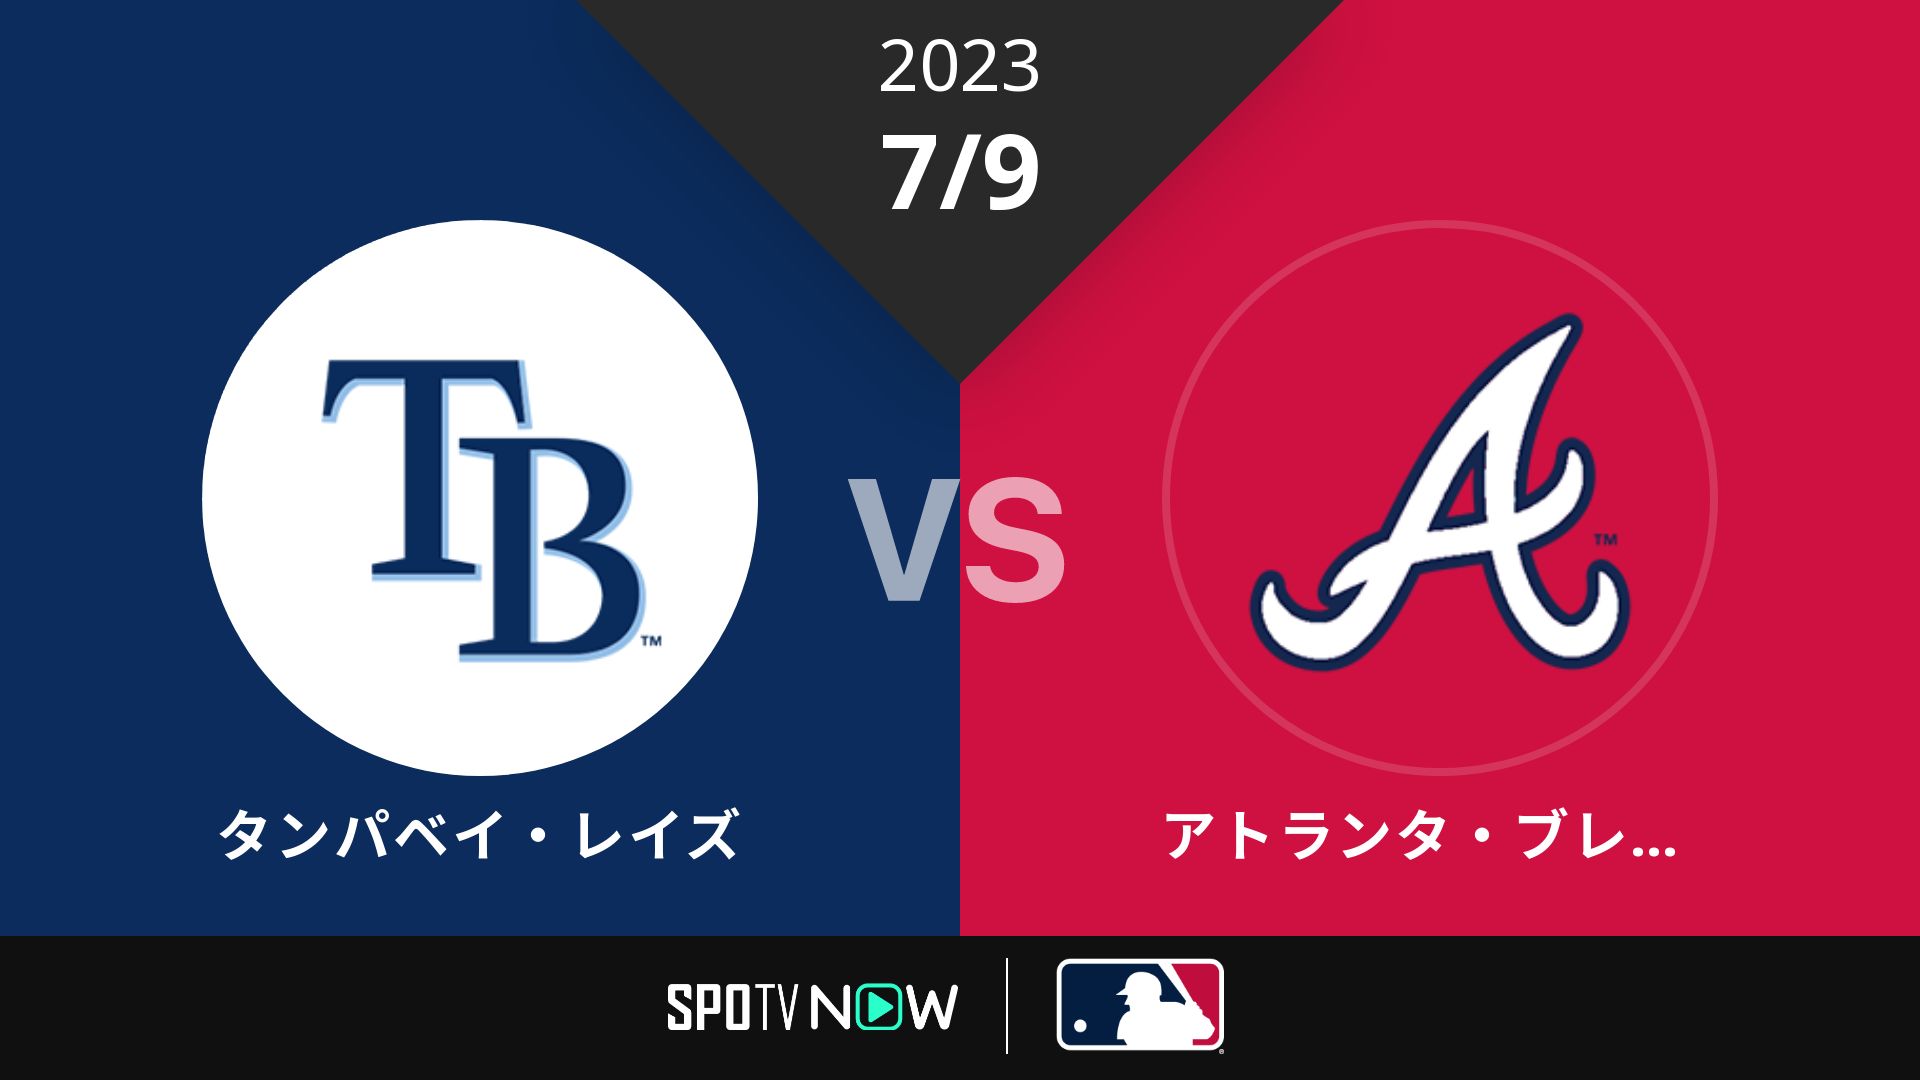 2023/7/9 レイズ vs ブレーブス [MLB]